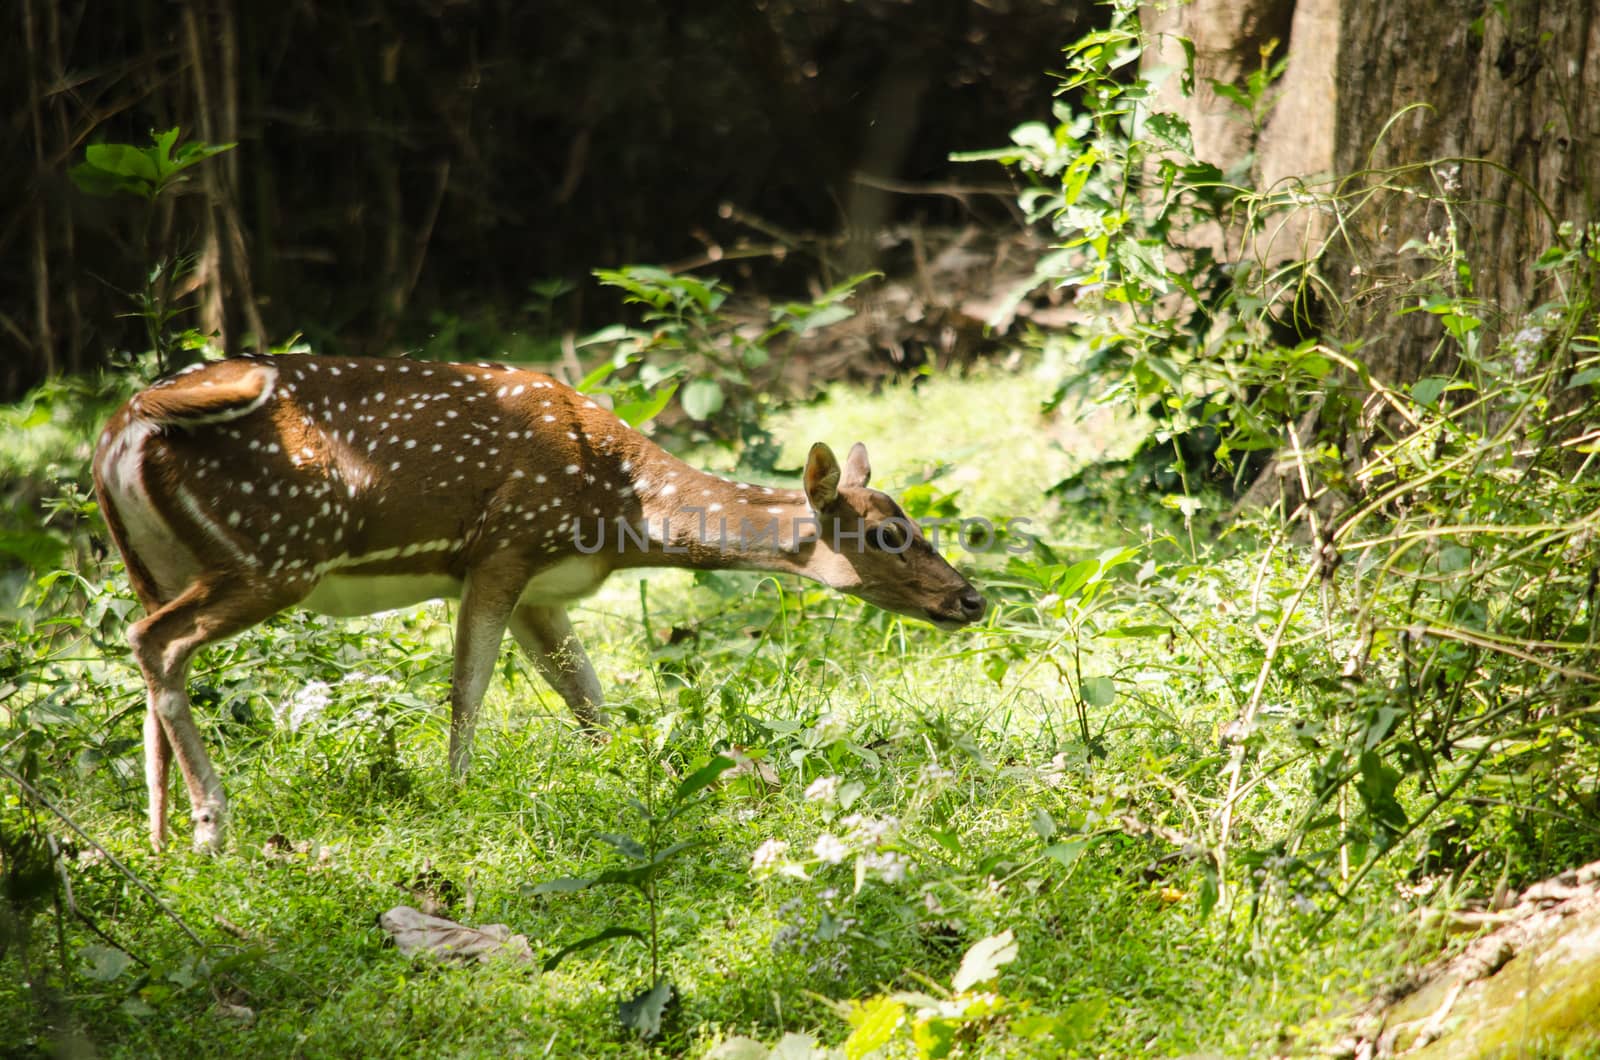 Chital, Cheetal, Spotted deer, Axis deer walk in glassland by visanuwit